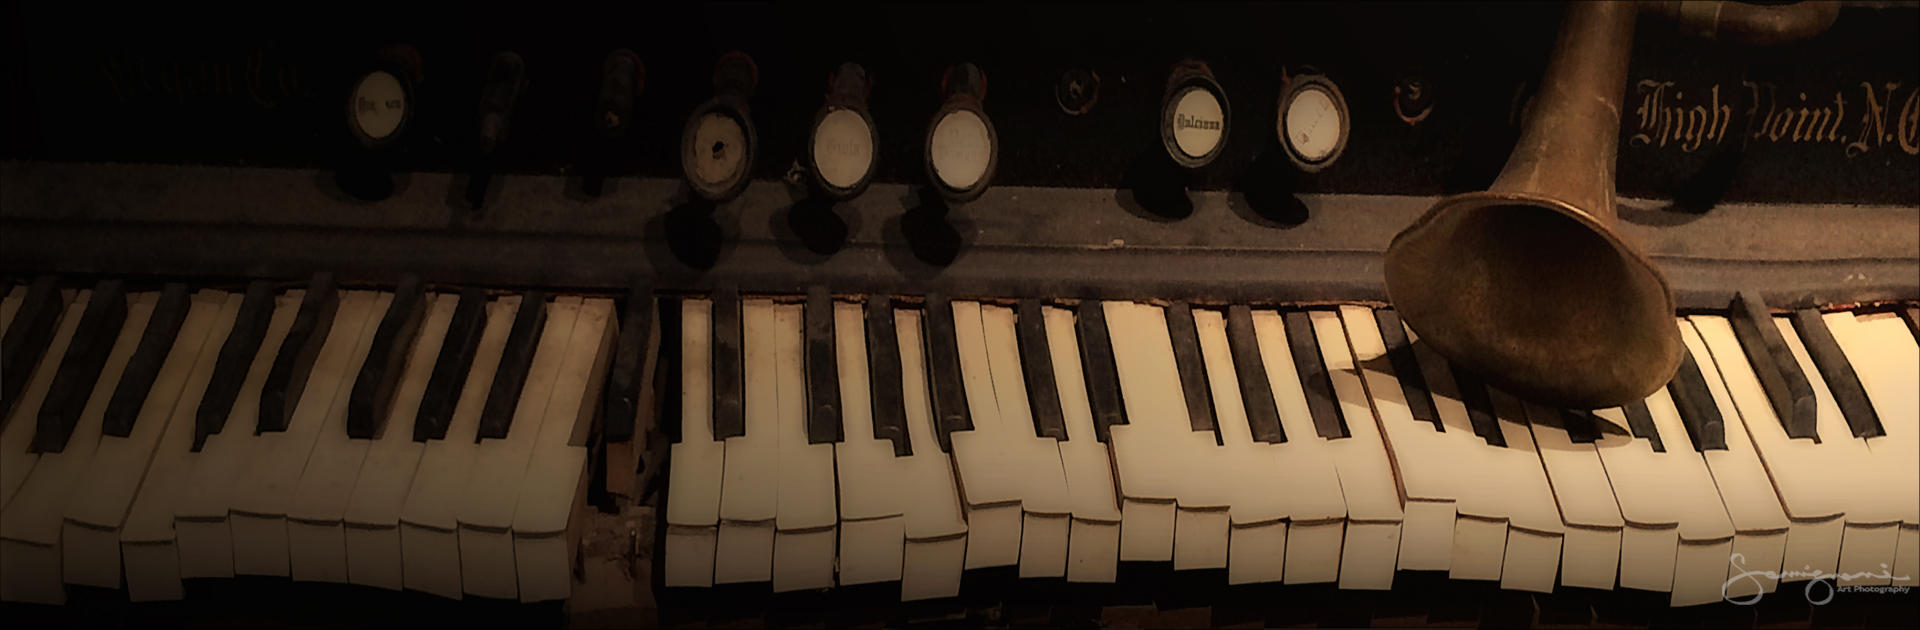 Broken Piano Keys-
Mass MOCA Museum